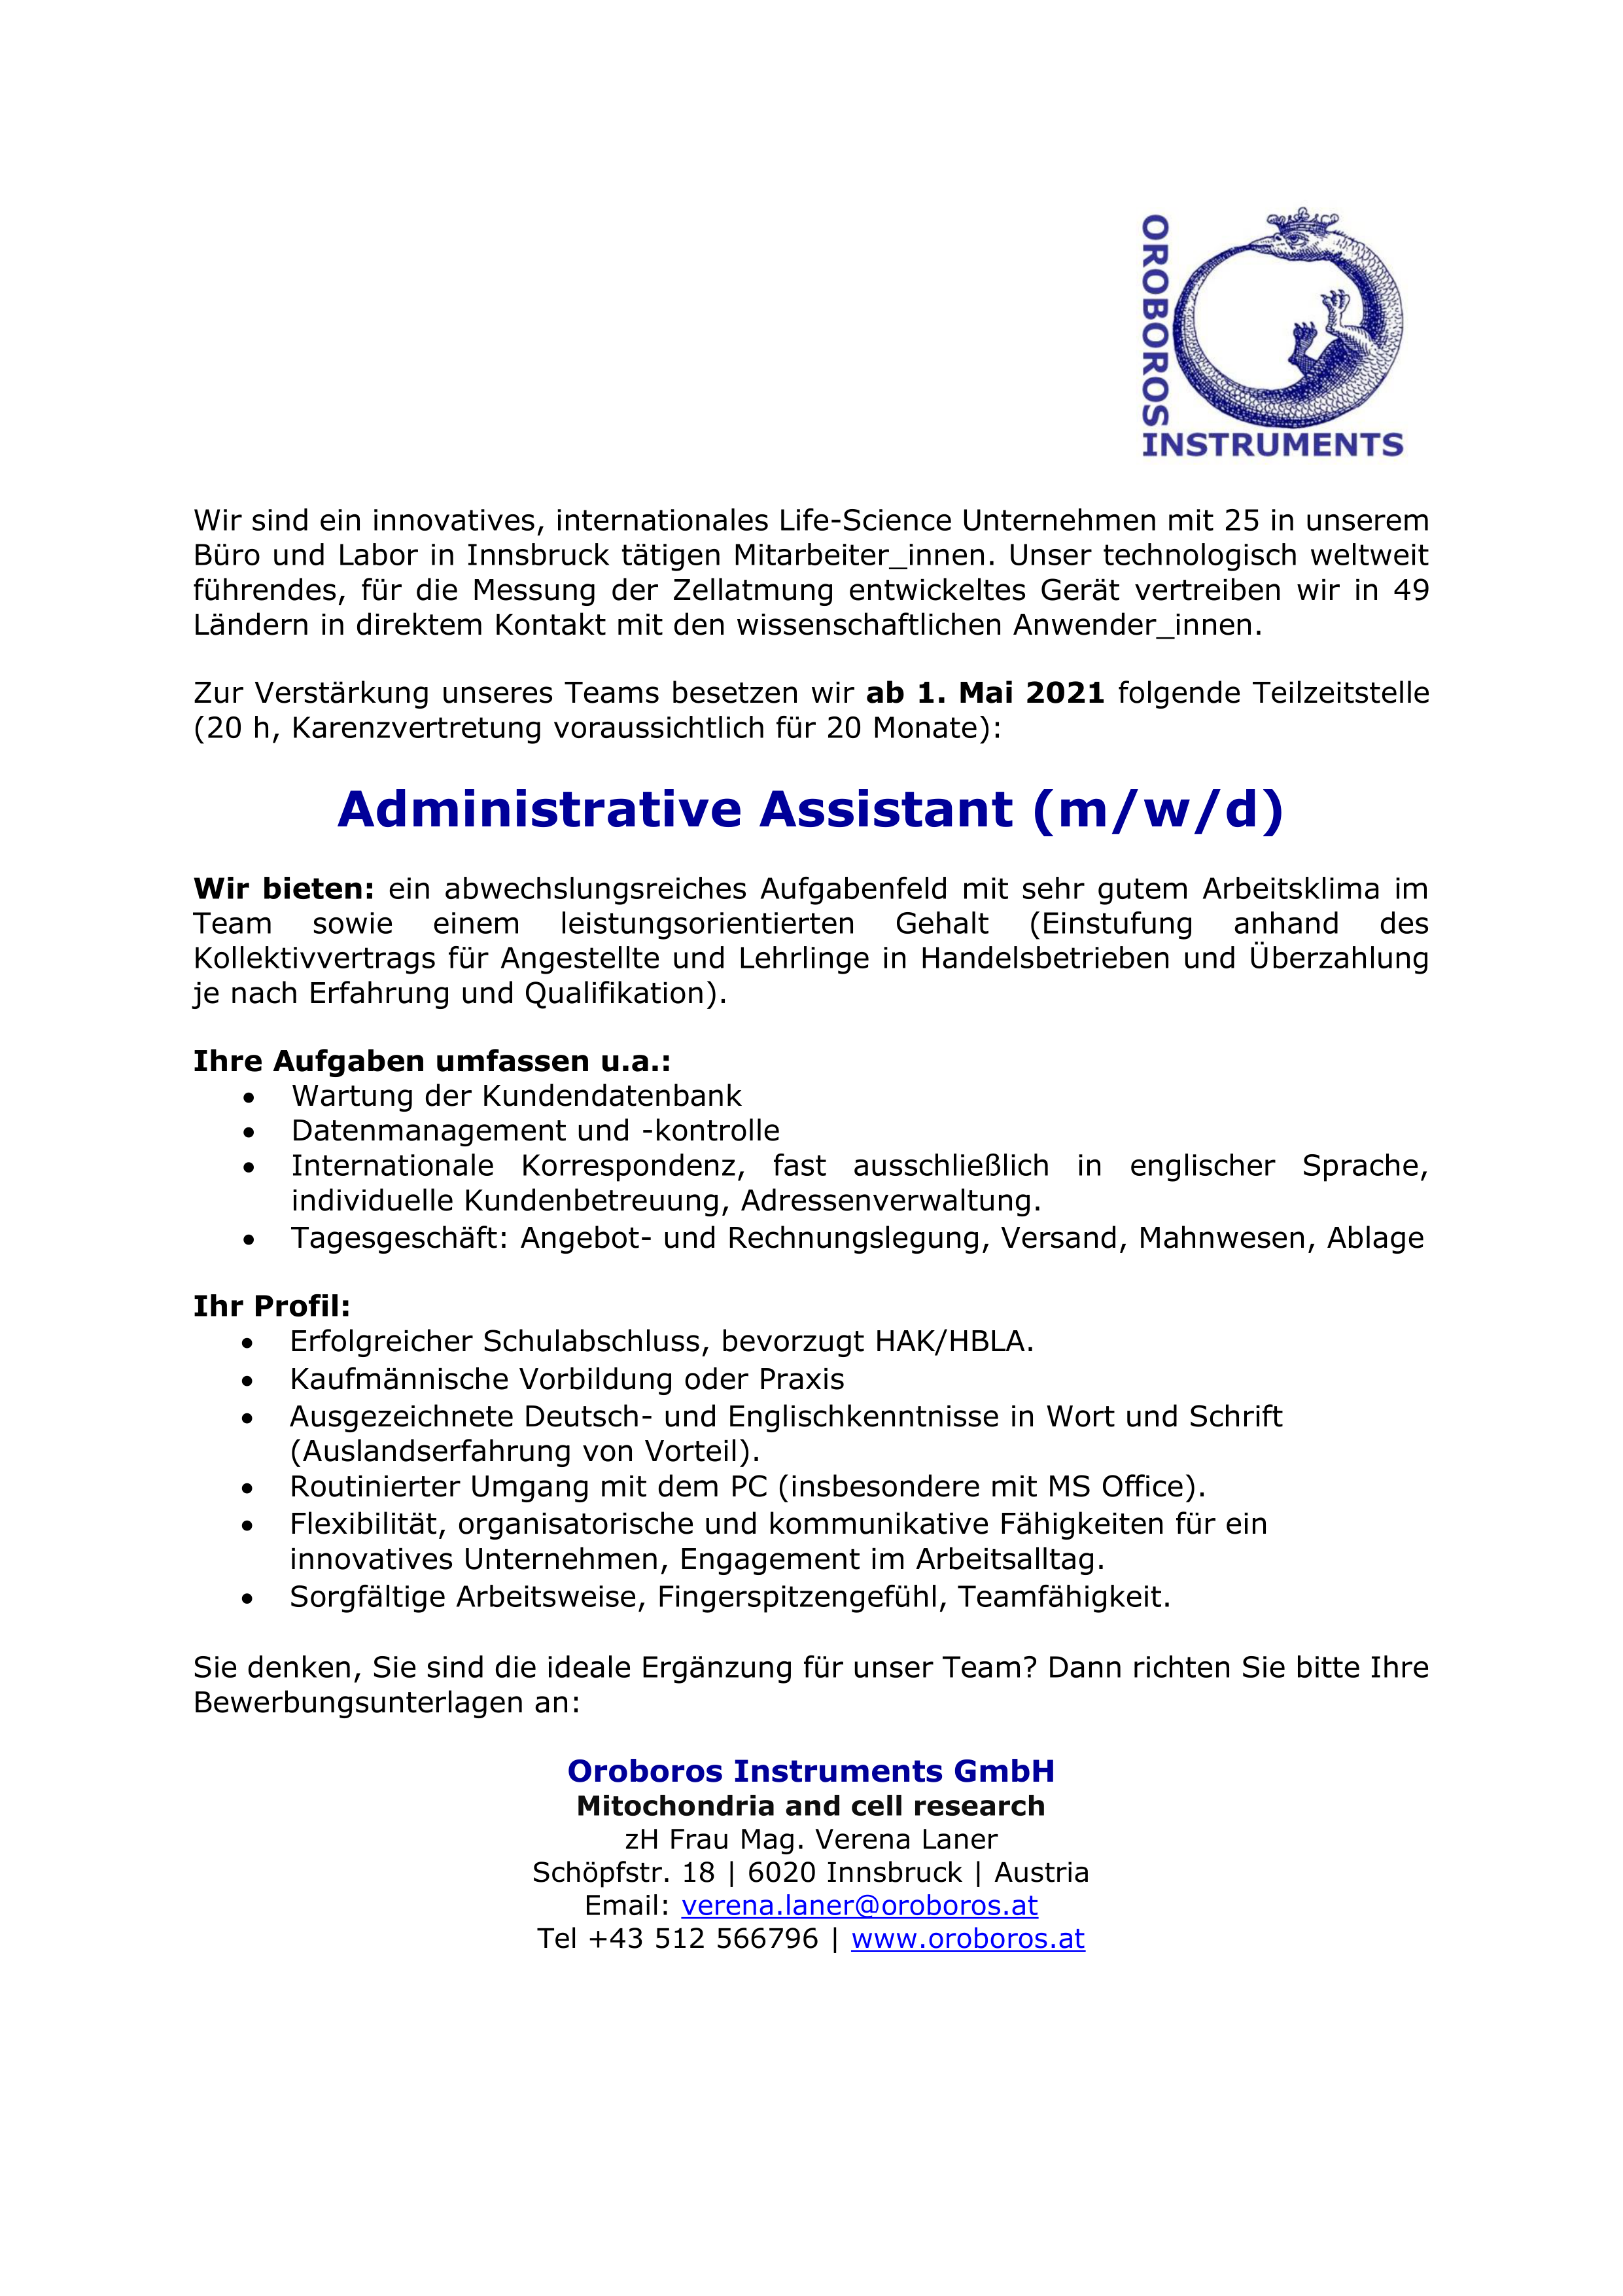 Administrative Assistant (m/w/d)Administrative Assistant (m/w/d)